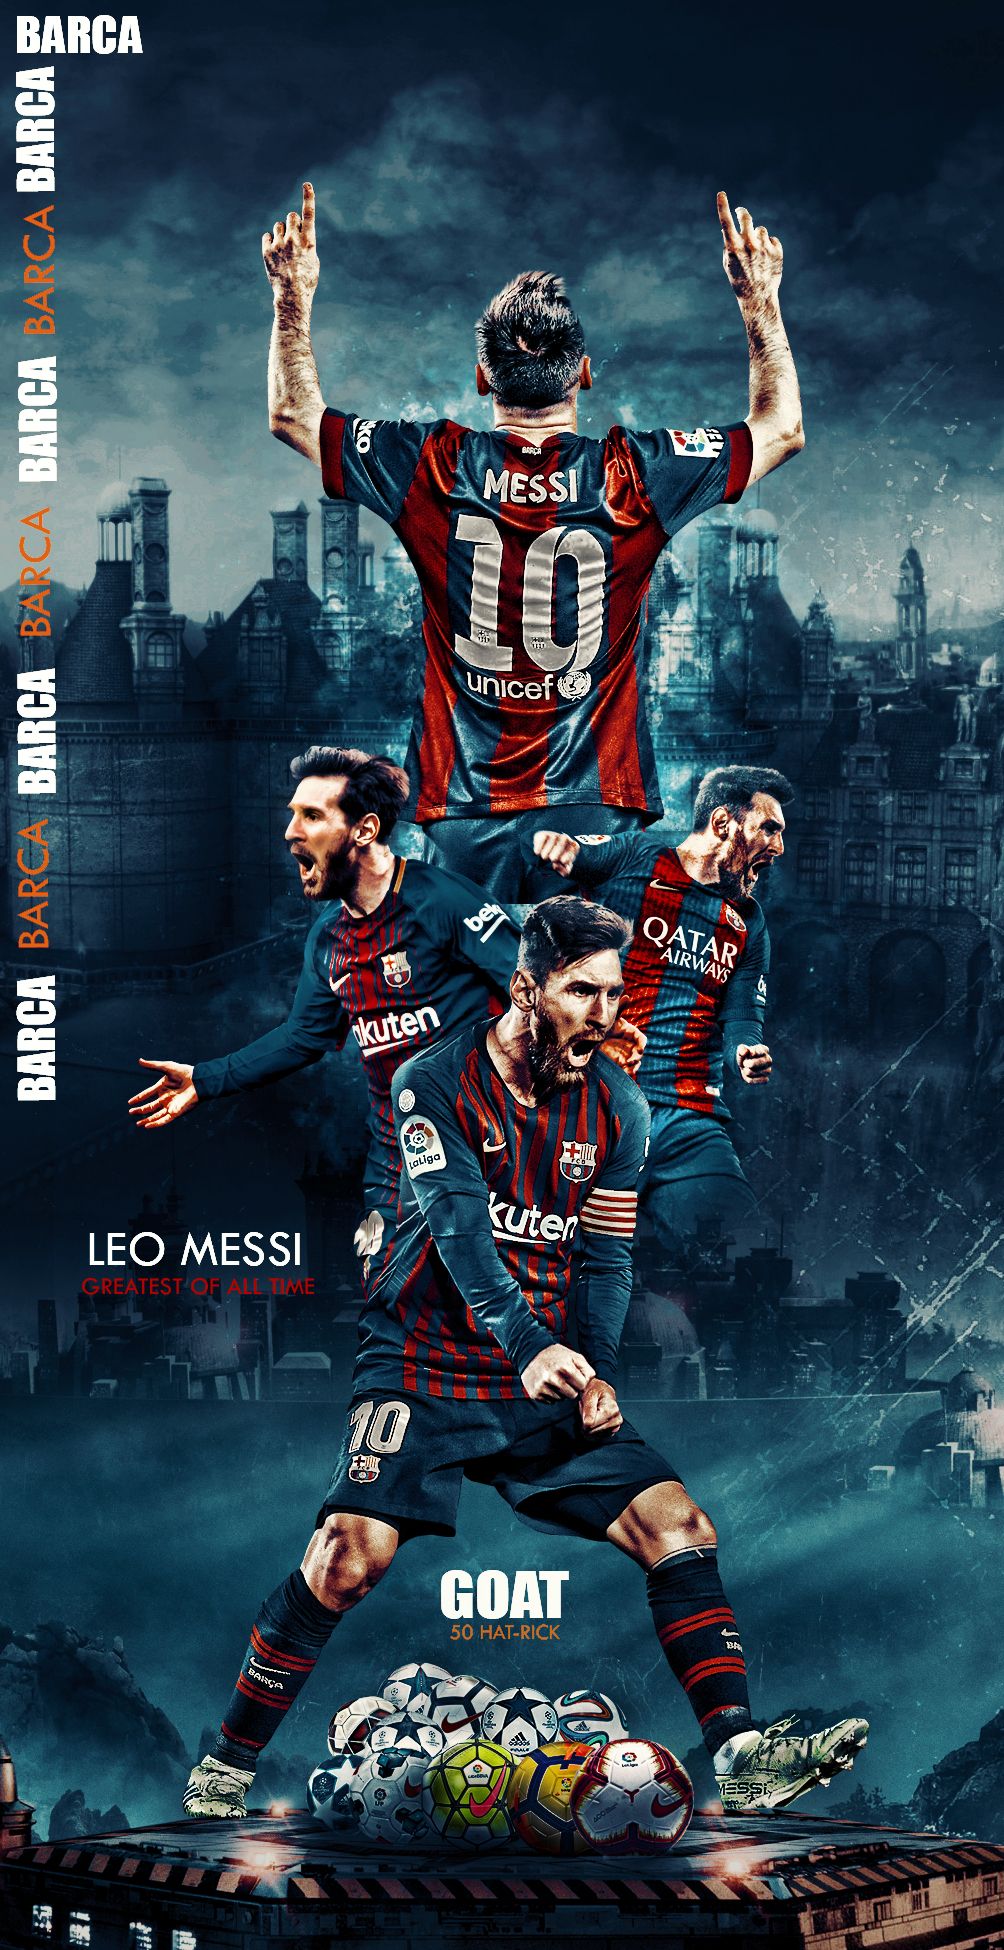 Cùng trải nghiệm không gian đầy màu sắc với Messi Full Screen Wallpaper và hòa mình vào không khí đam mê bóng đá của siêu sao này. Với hình nền đầy chất lượng và phong cách, bạn sẽ thấy mình đắm chìm trong bầu không khí thể thao và tinh thần thi đấu mãnh liệt của người hùng Barcelona này.